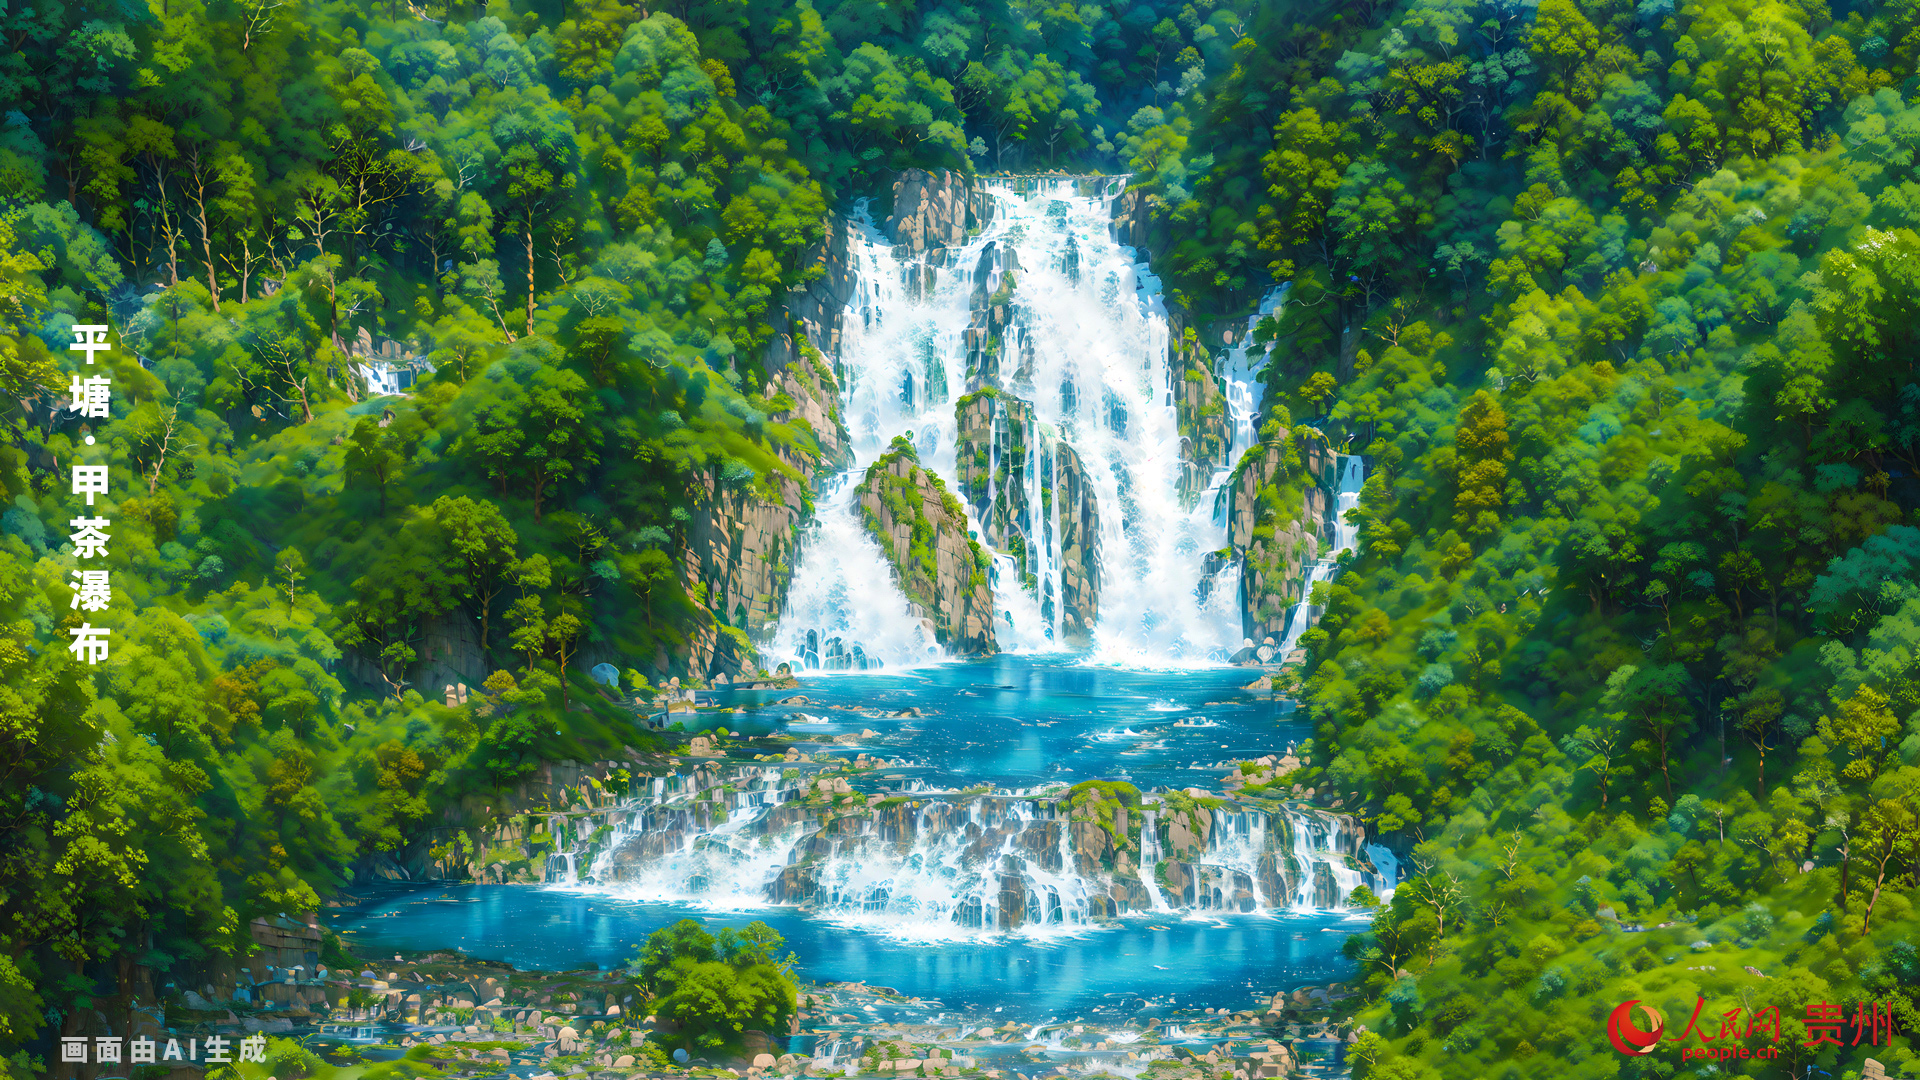 茶瀑布位于平塘县甲茶镇甲茶村拉抹寨左侧，宽40米，高37米，轻盈秀丽。